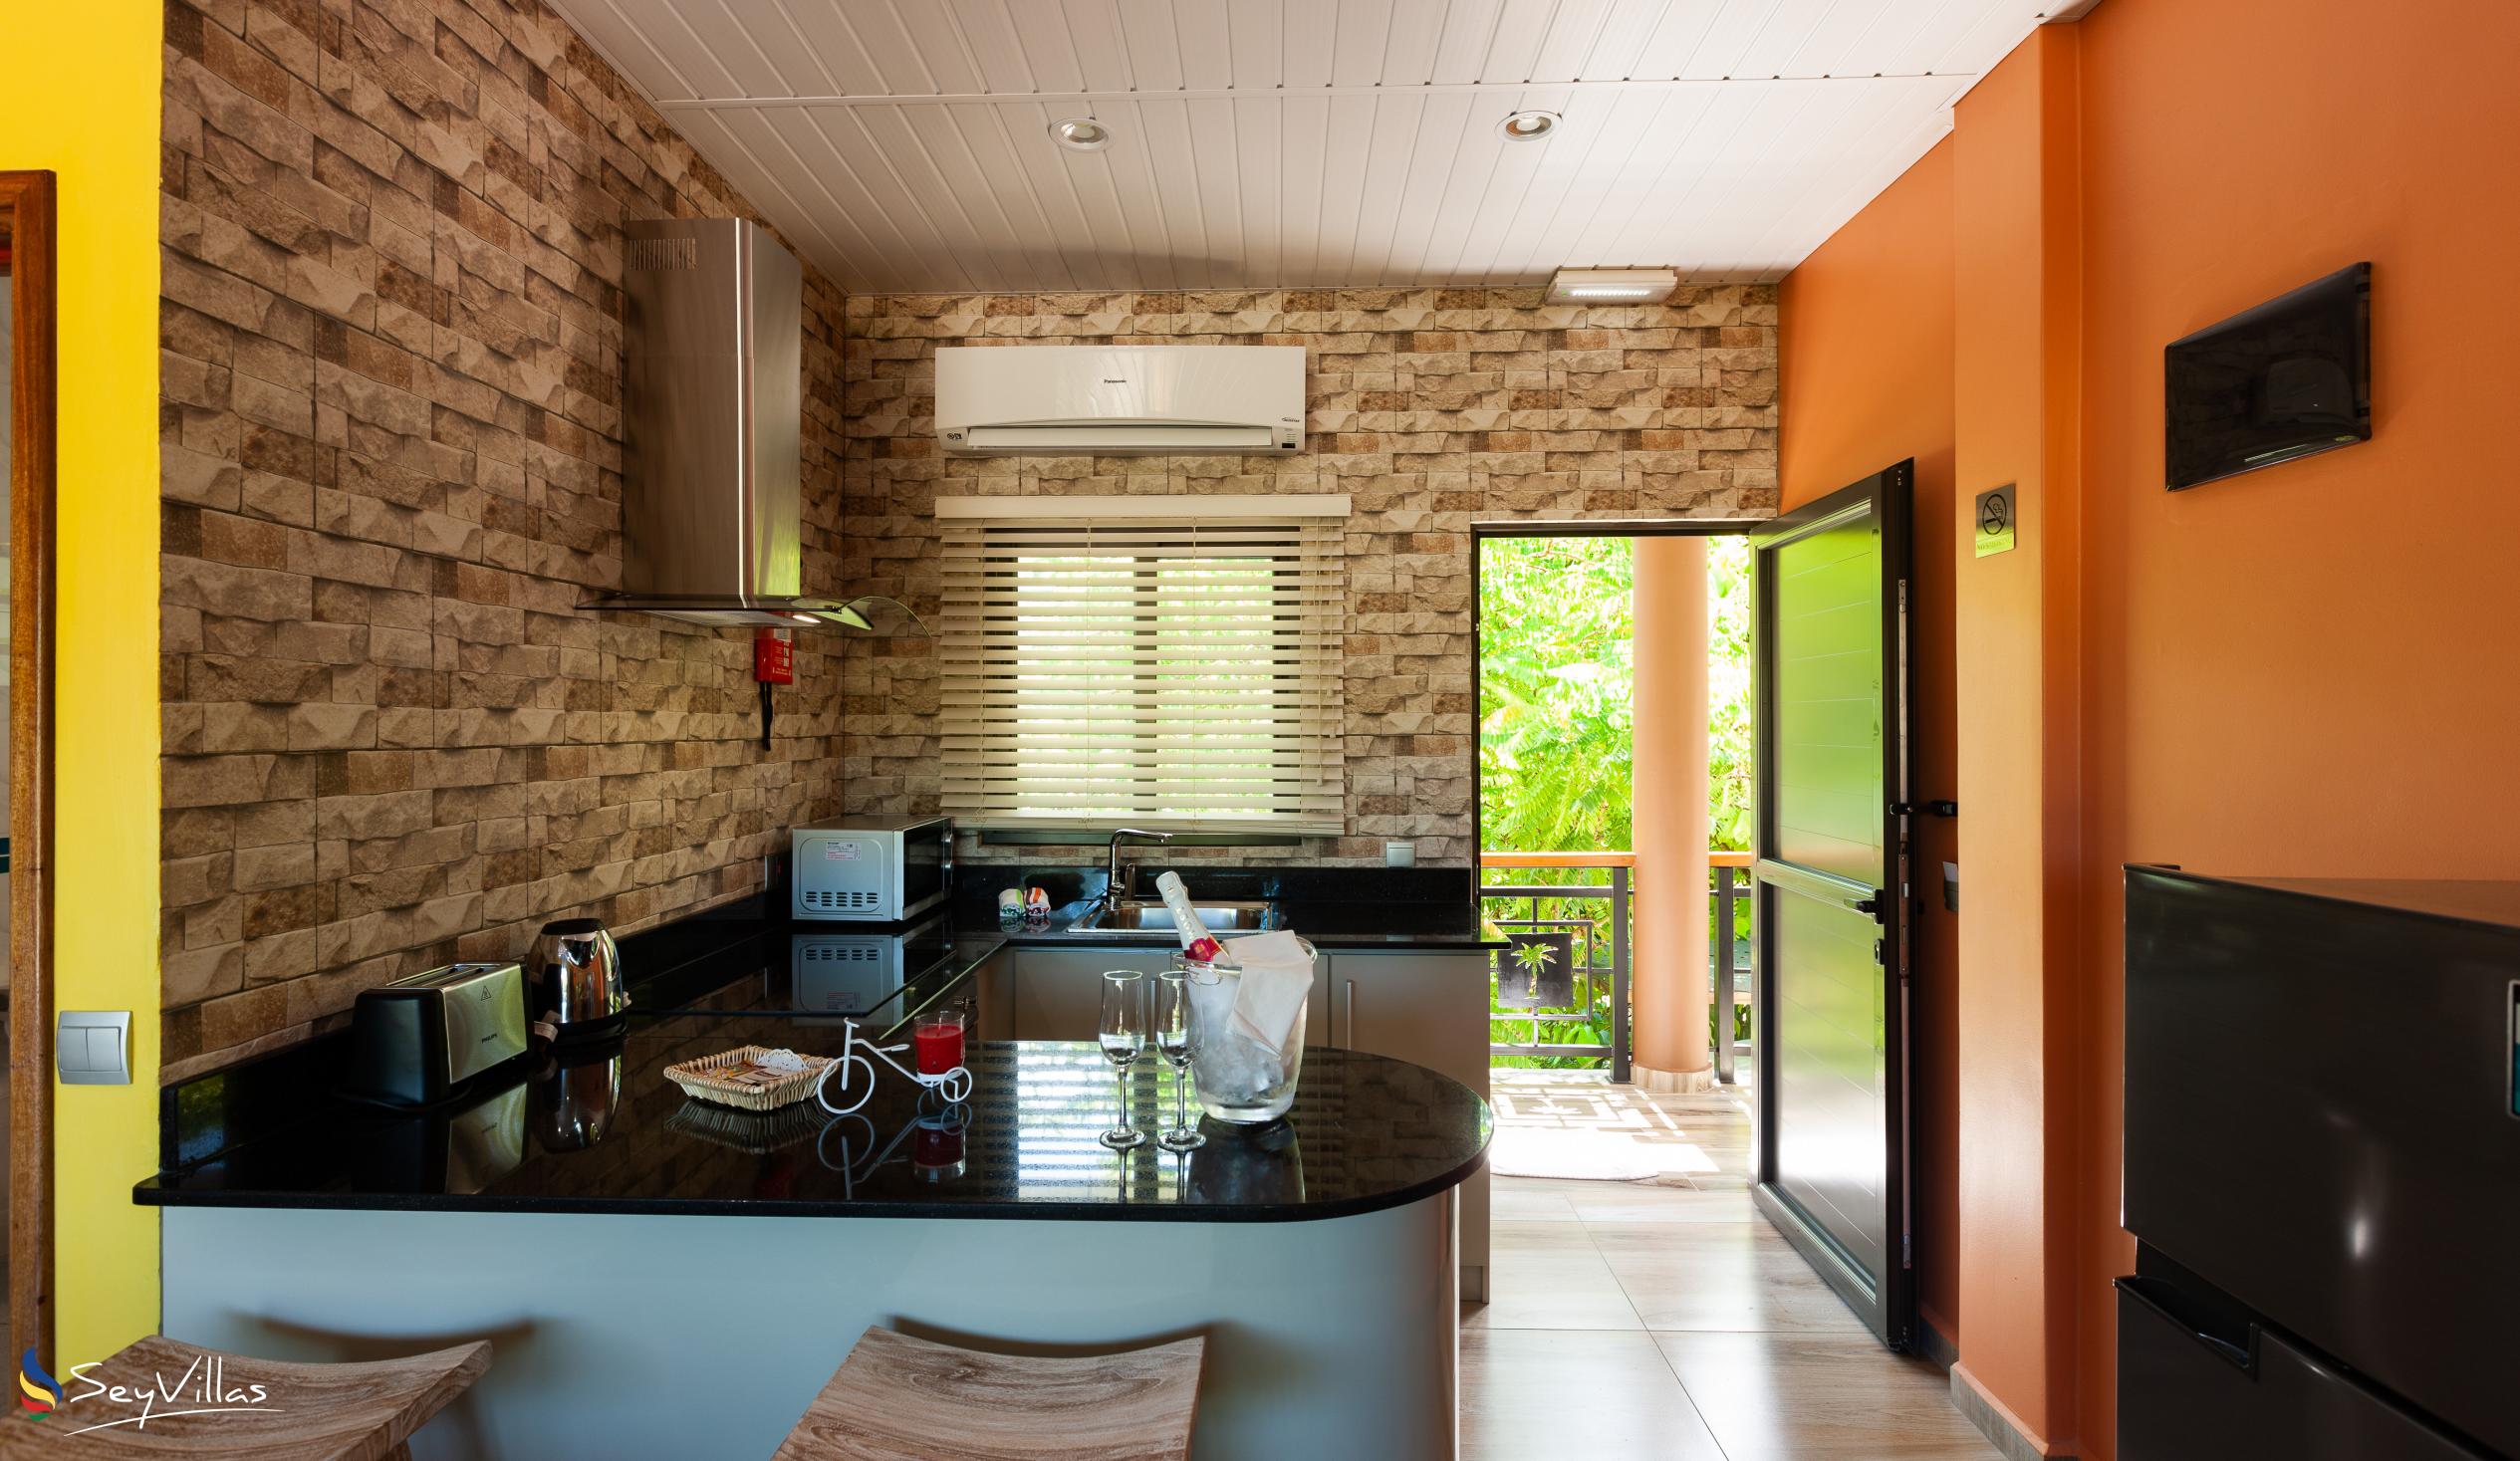 Photo 108: Casa de Leela - Deluxe Apartment - La Digue (Seychelles)